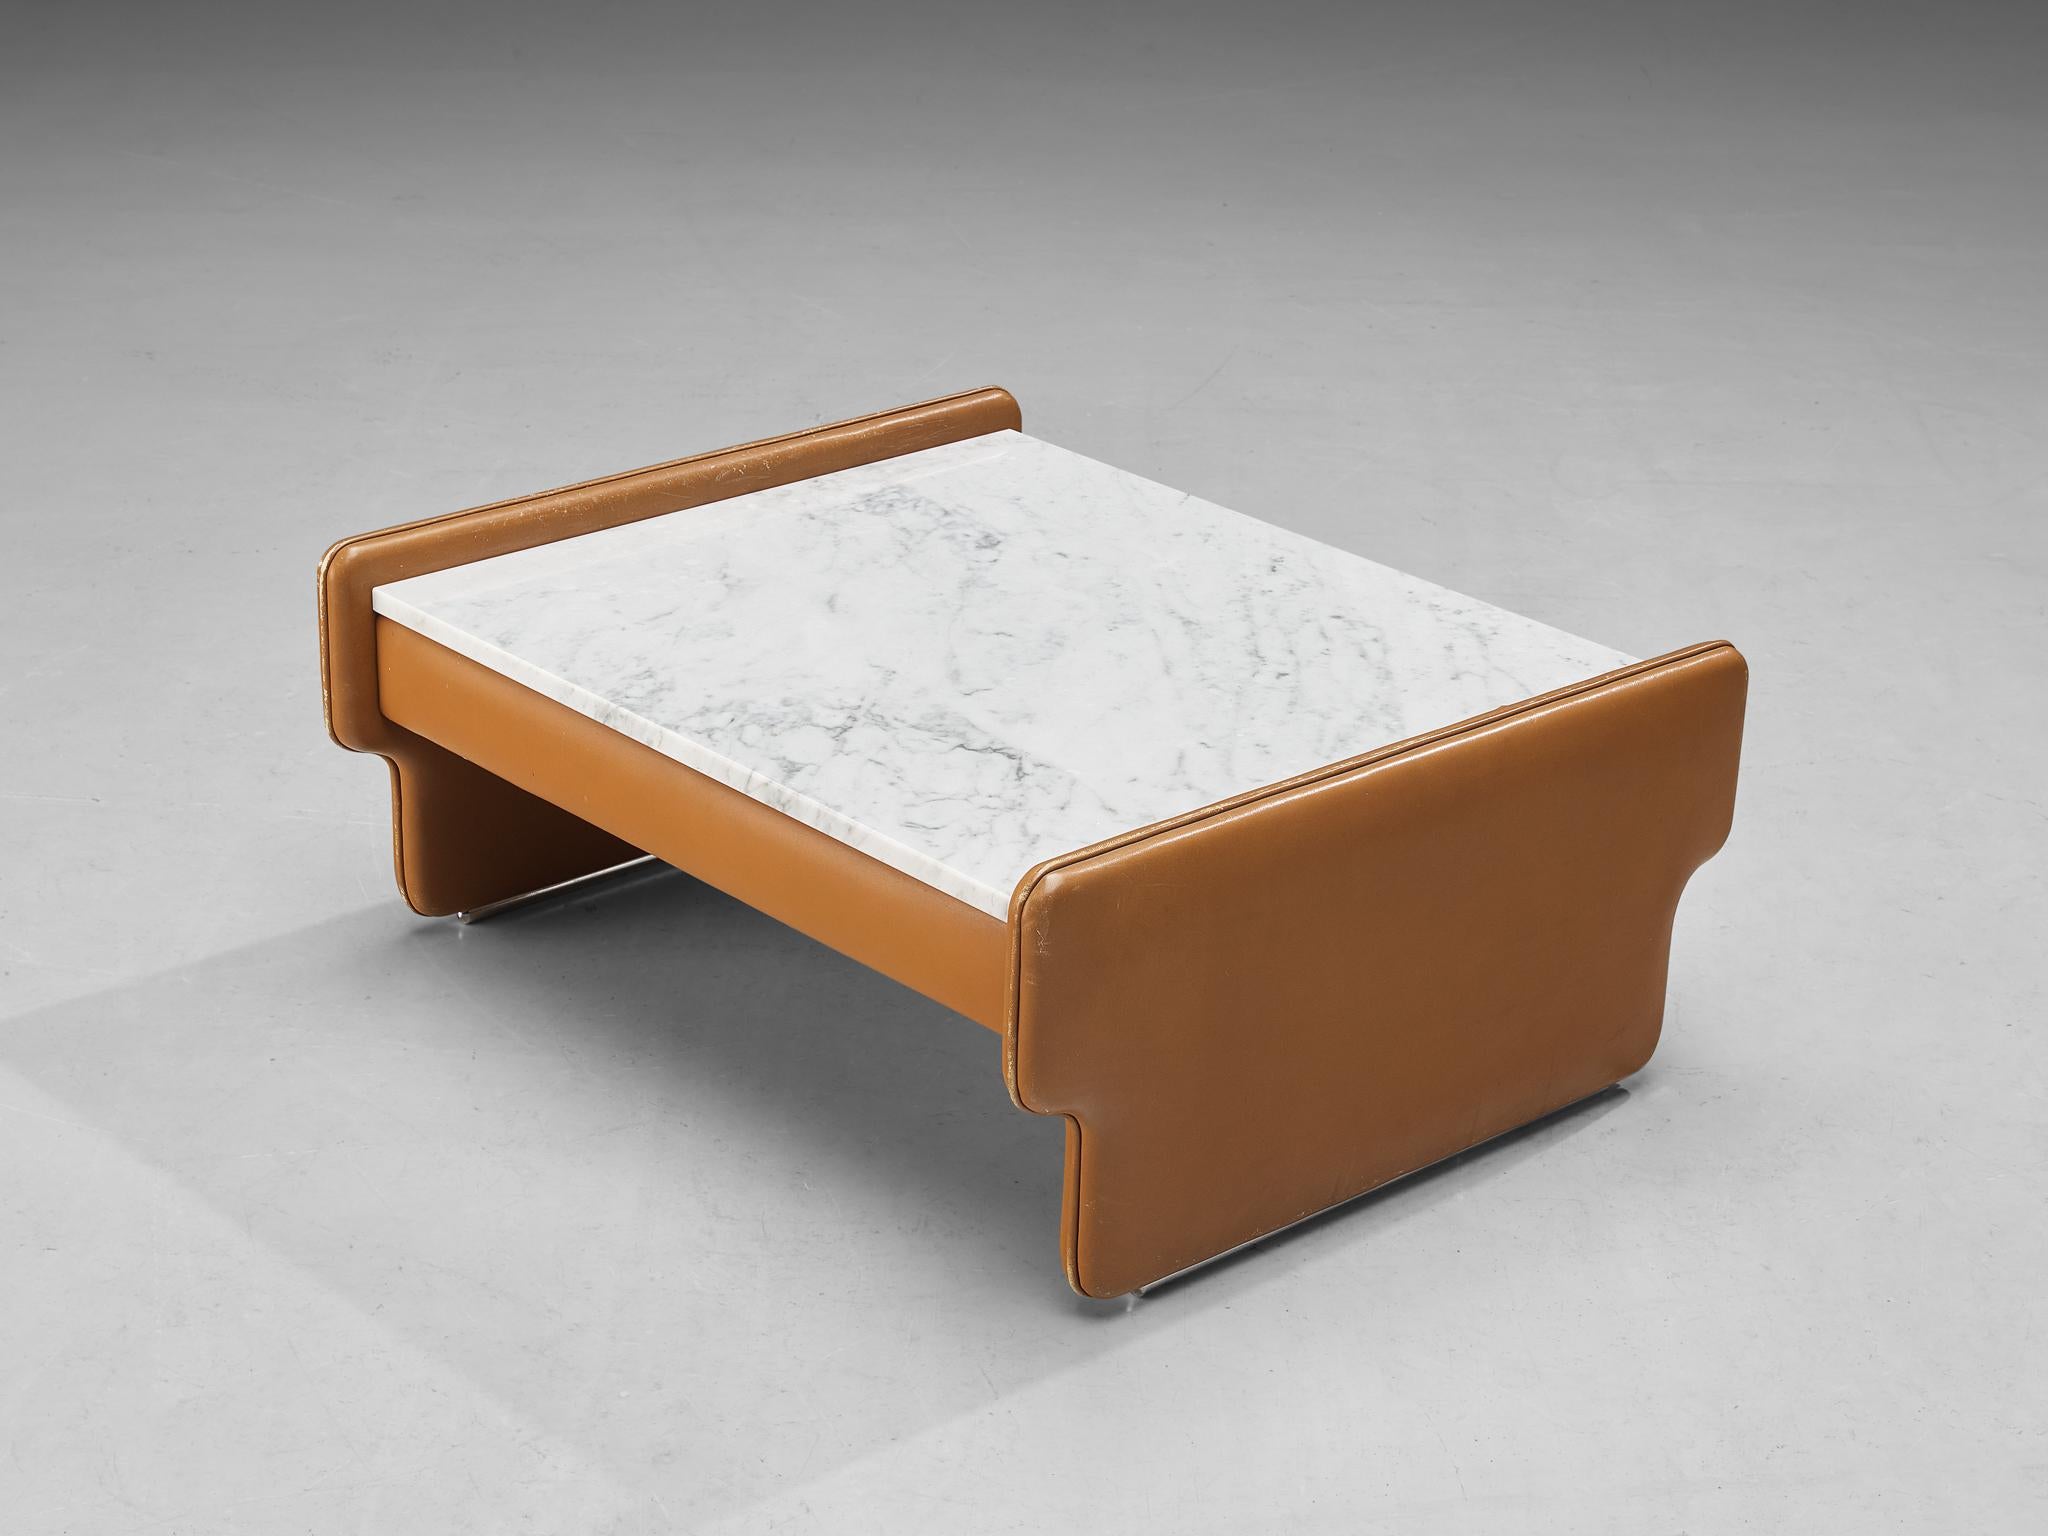 Table basse, cuir, marbre, Italie, années 1970. 

Cette table basse rayonne véritablement du design italien des années soixante-dix. L'utilisation de cuir cognac souple associé à des formes géométriques frappantes est très remarquable et